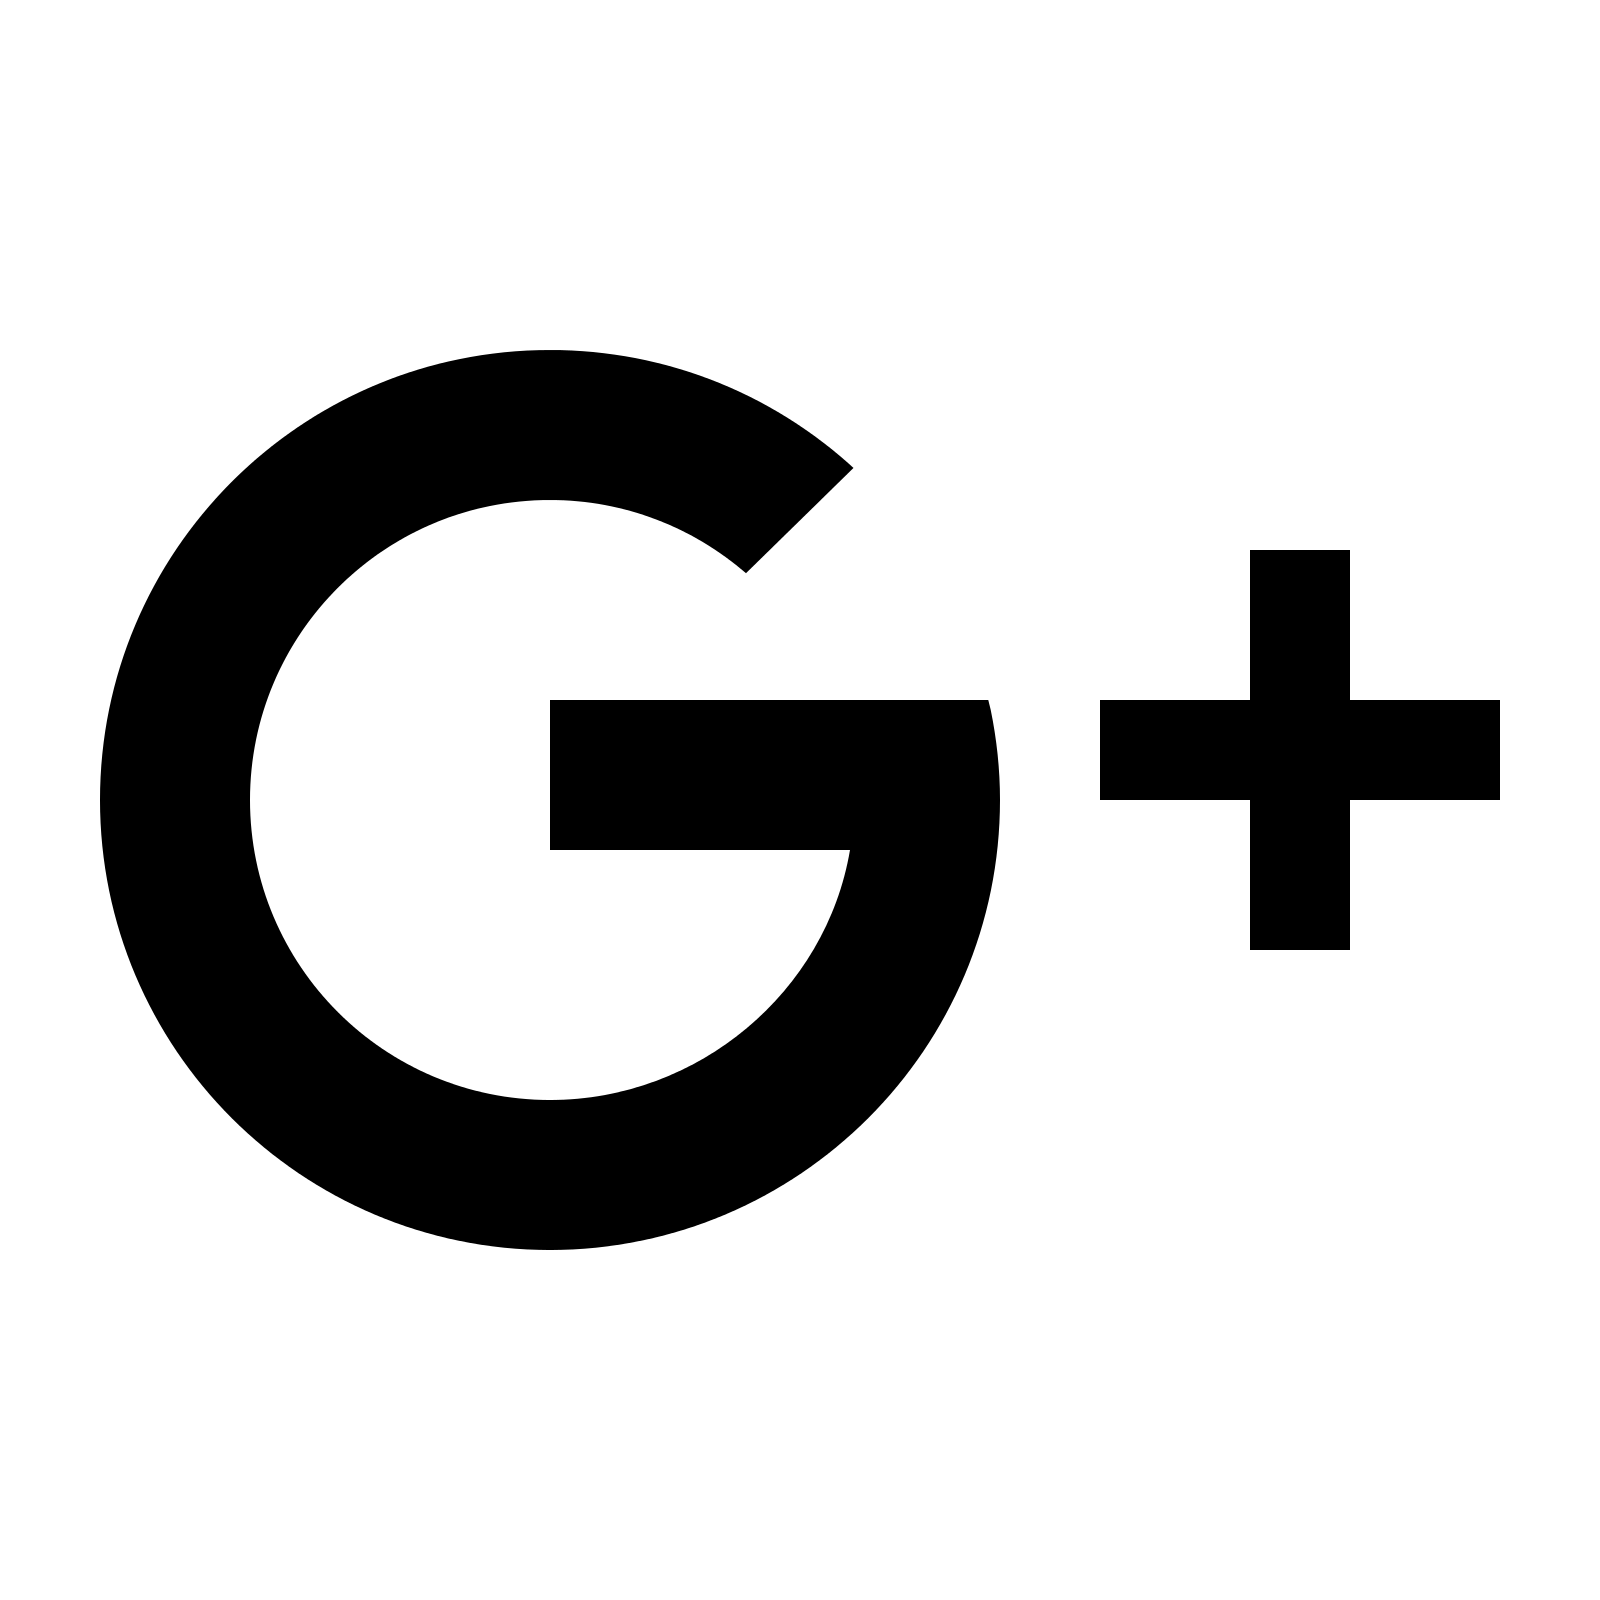 Find Us Google Plus Logo - Google Plus Logo Png Transparent Background (74+ images in ...